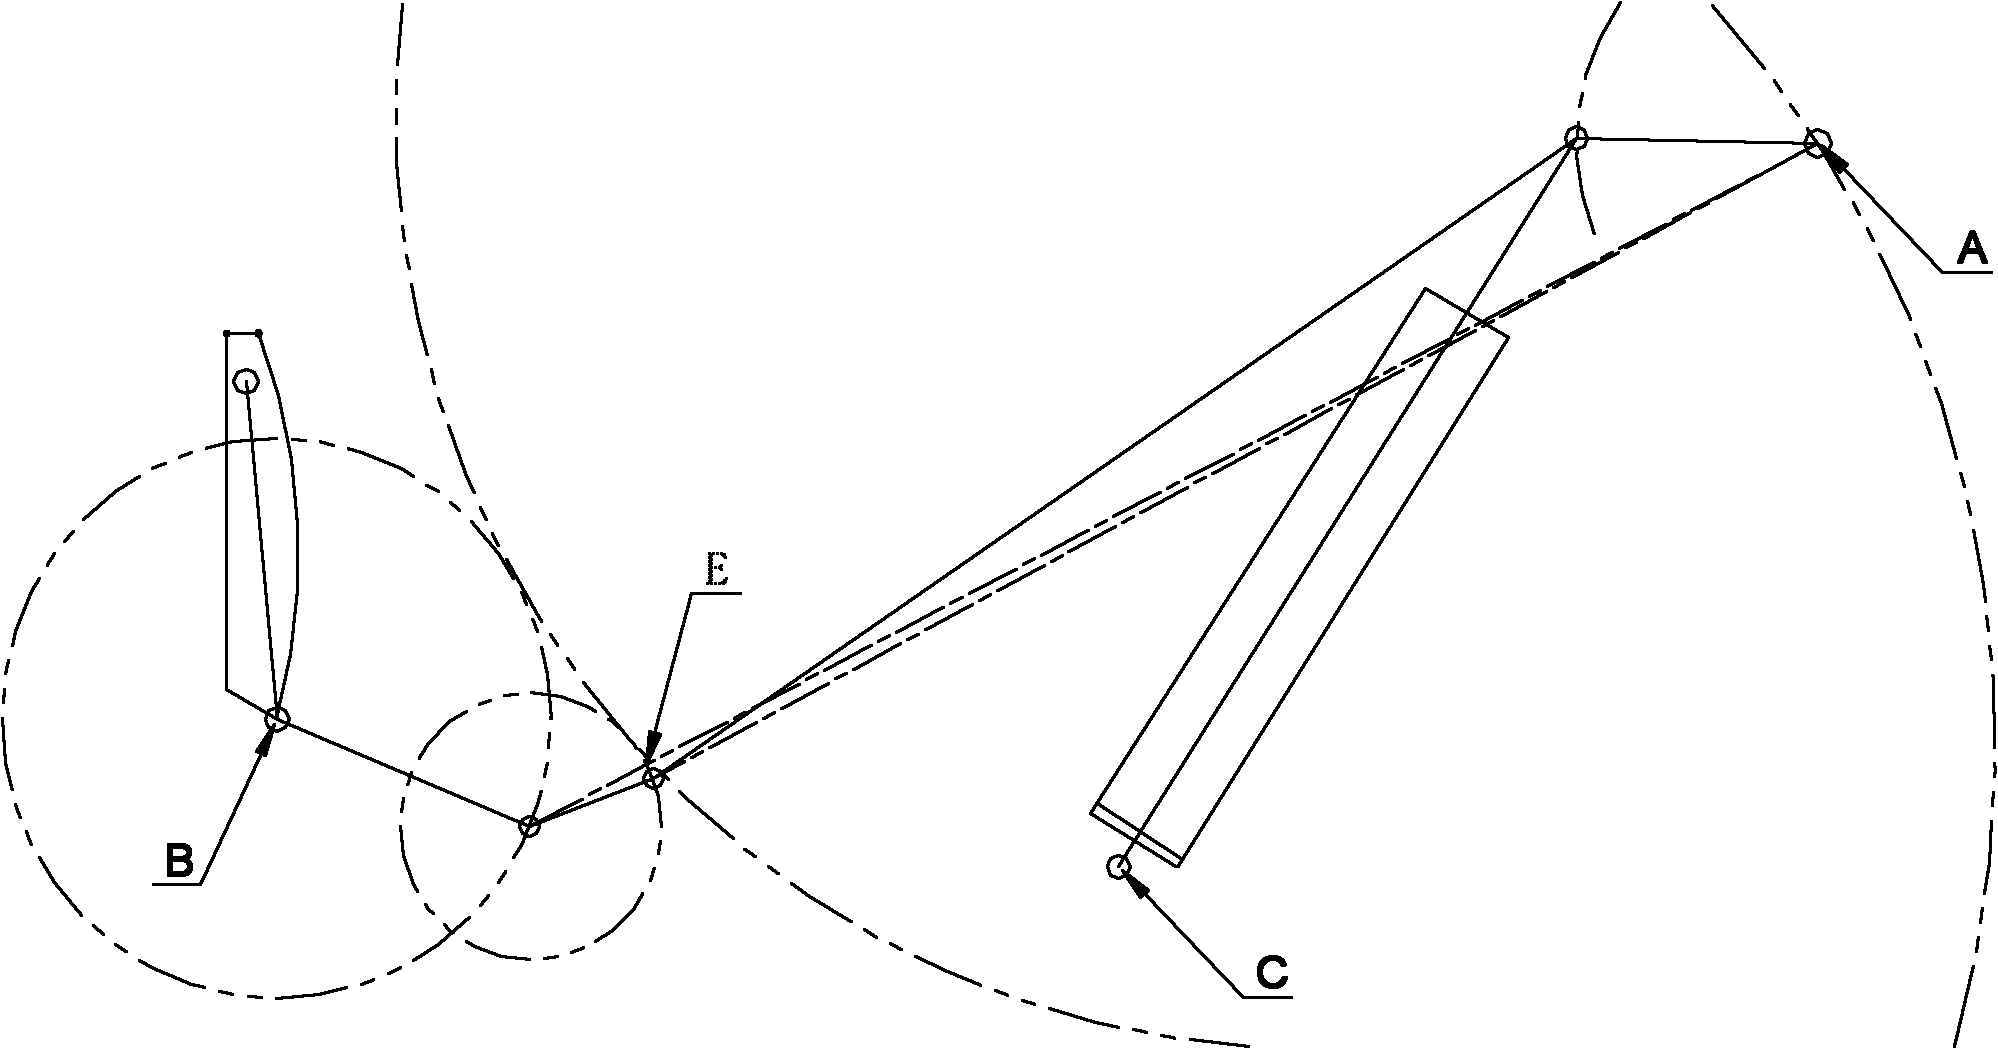 Six-bar mechanism of dumper lifting device